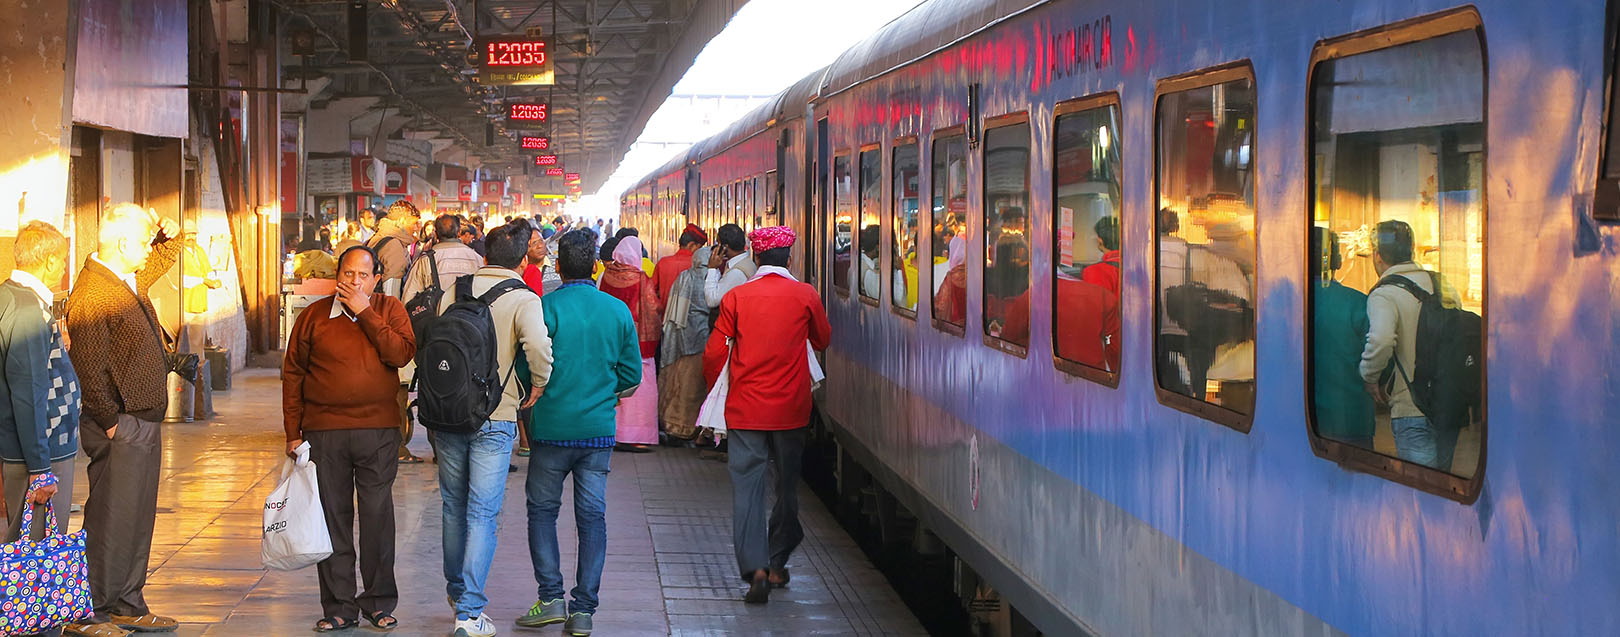 Indian Railways should seek innovative financing: Vinod Rai